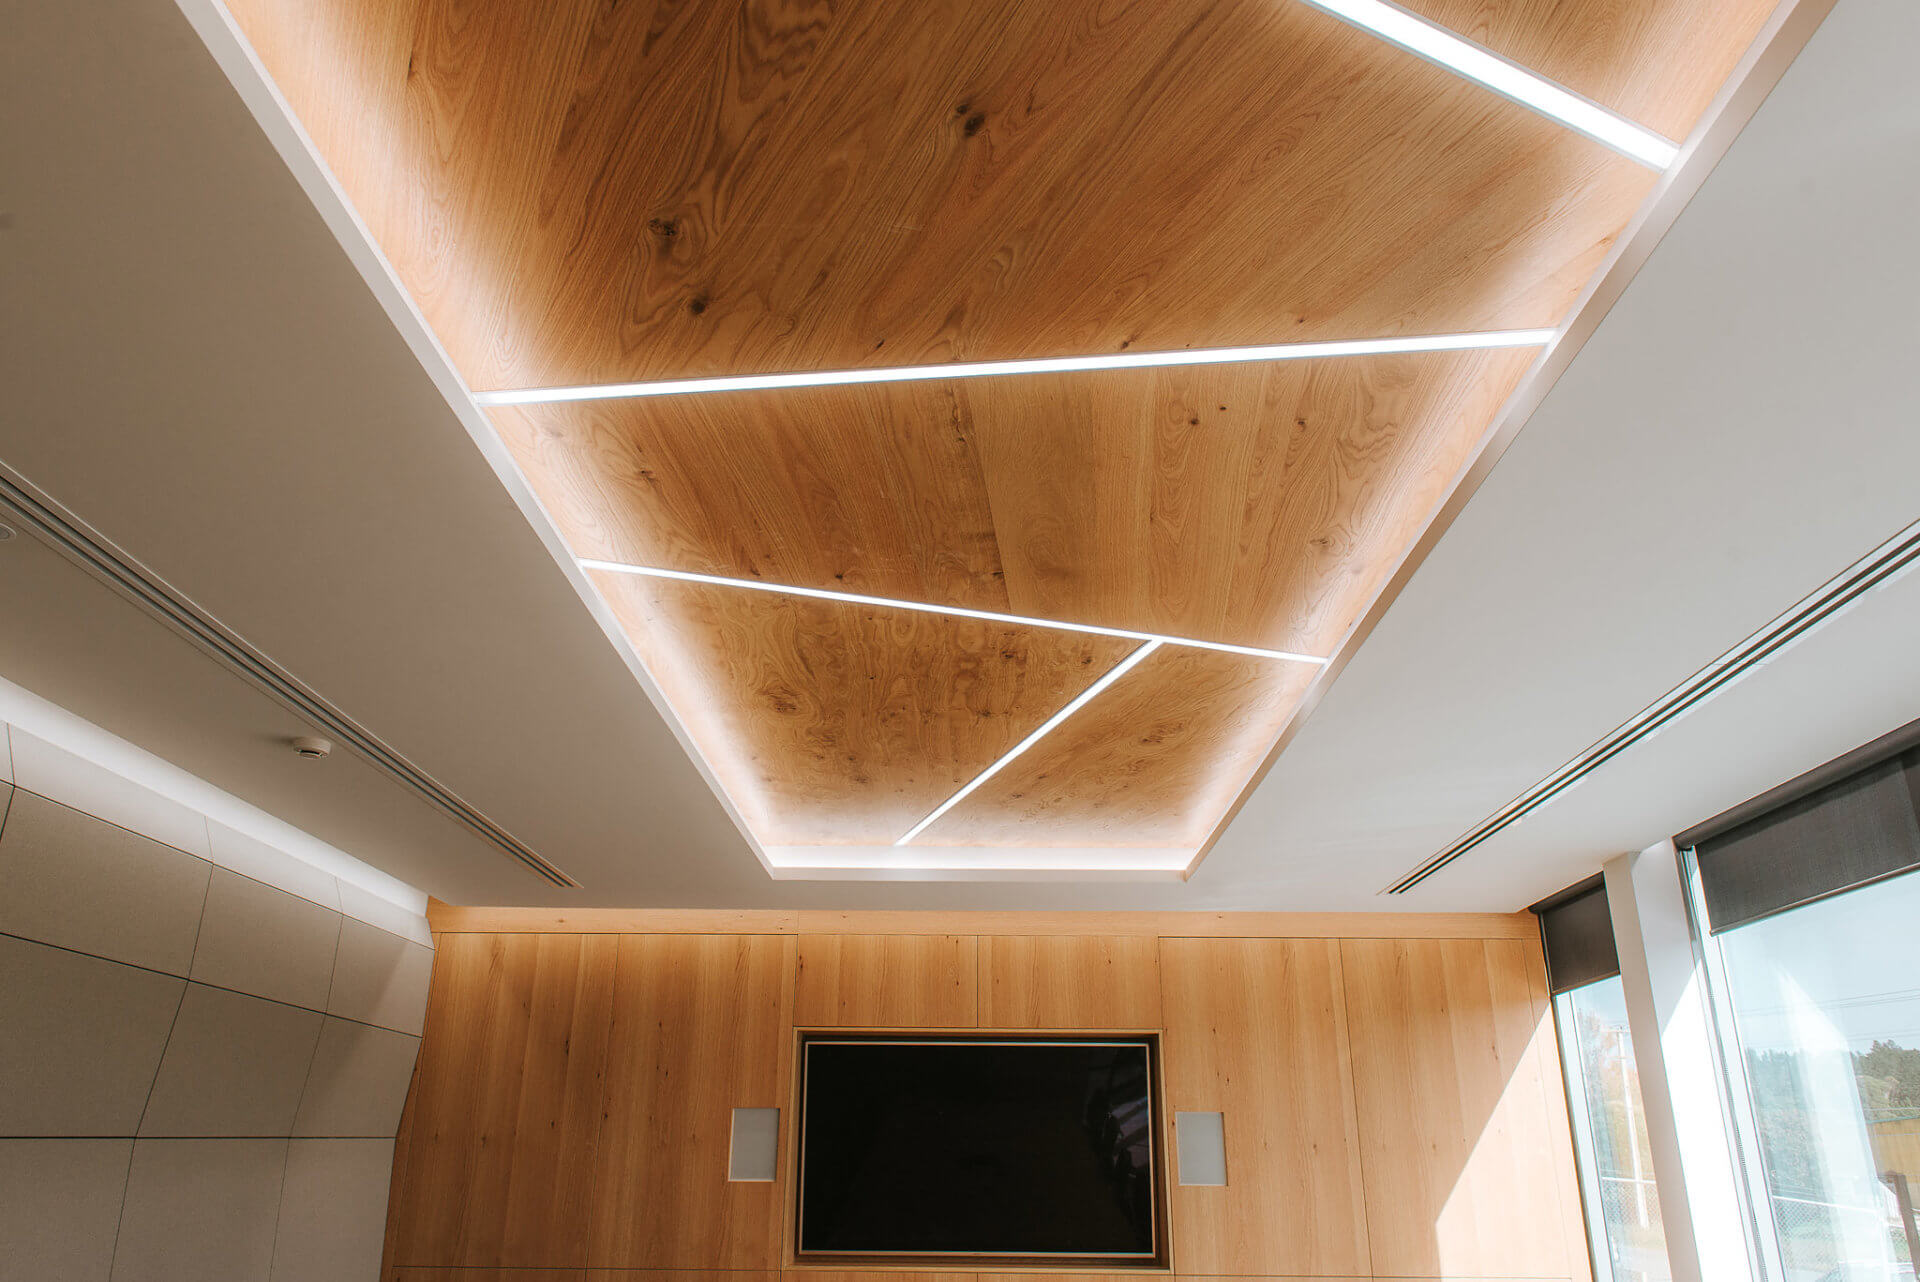 Oak veneer ceiling panels with recessed strip lighting.